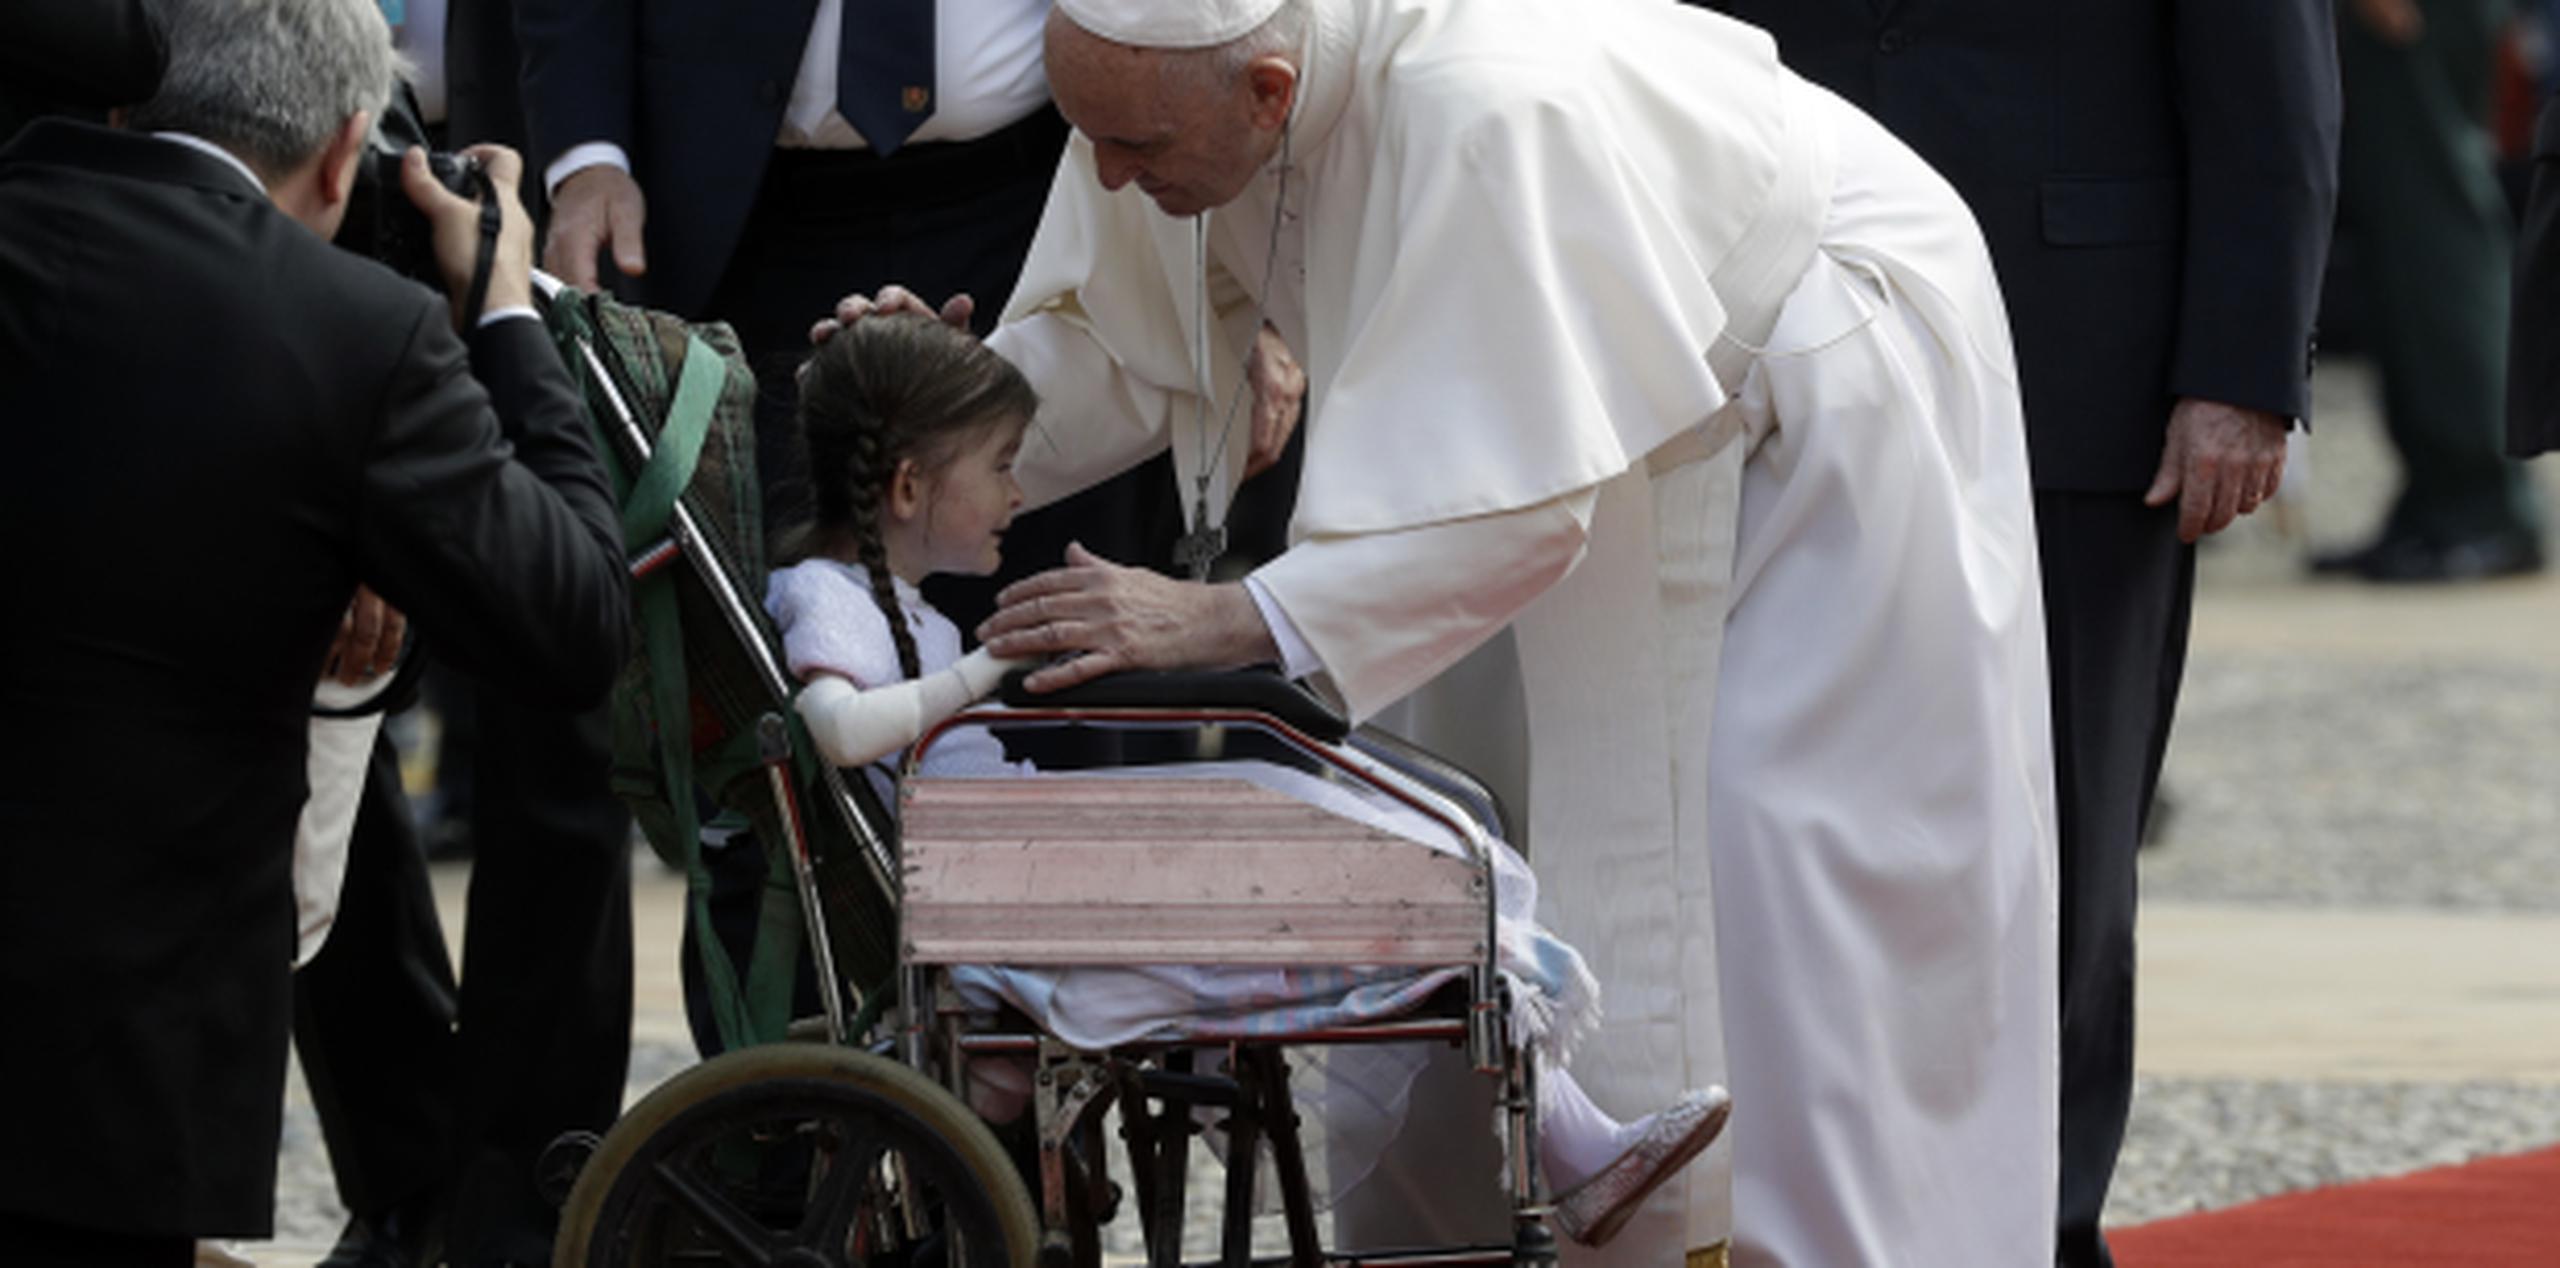 Un grupo de niños cantó y abrazó a Francisco a su llegada a la plaza y el papa saludó a chicos en sillas de ruedas antes de pronunciar su discurso. (AP)